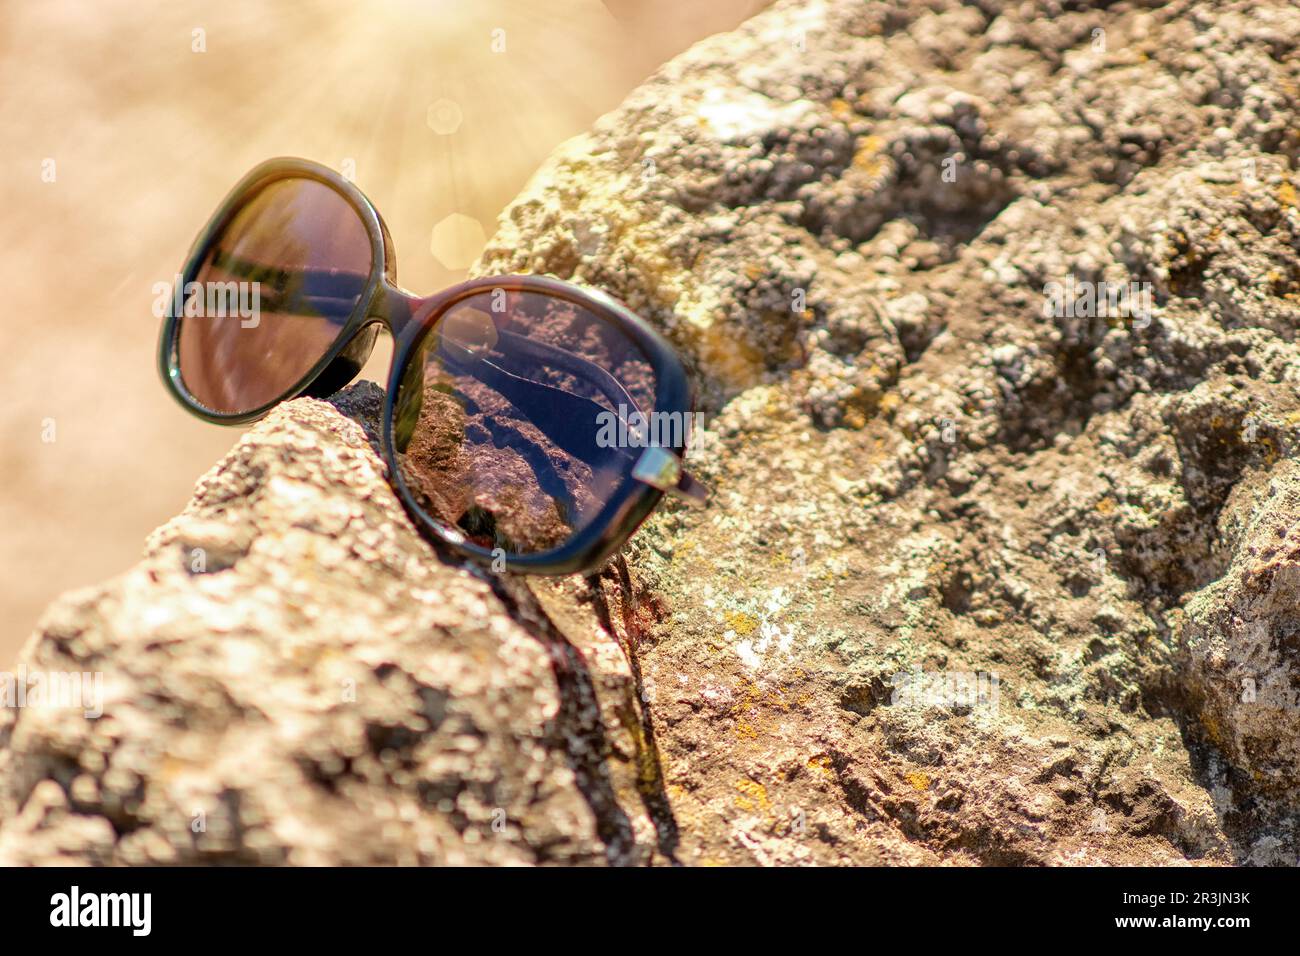 gli occhiali da sole giacciono su una pietra testurizzata, sulla riva del mare, sotto i raggi diretti del sole bruciante, il riflesso dei raggi del sole si riflette sugli occhiali Foto Stock